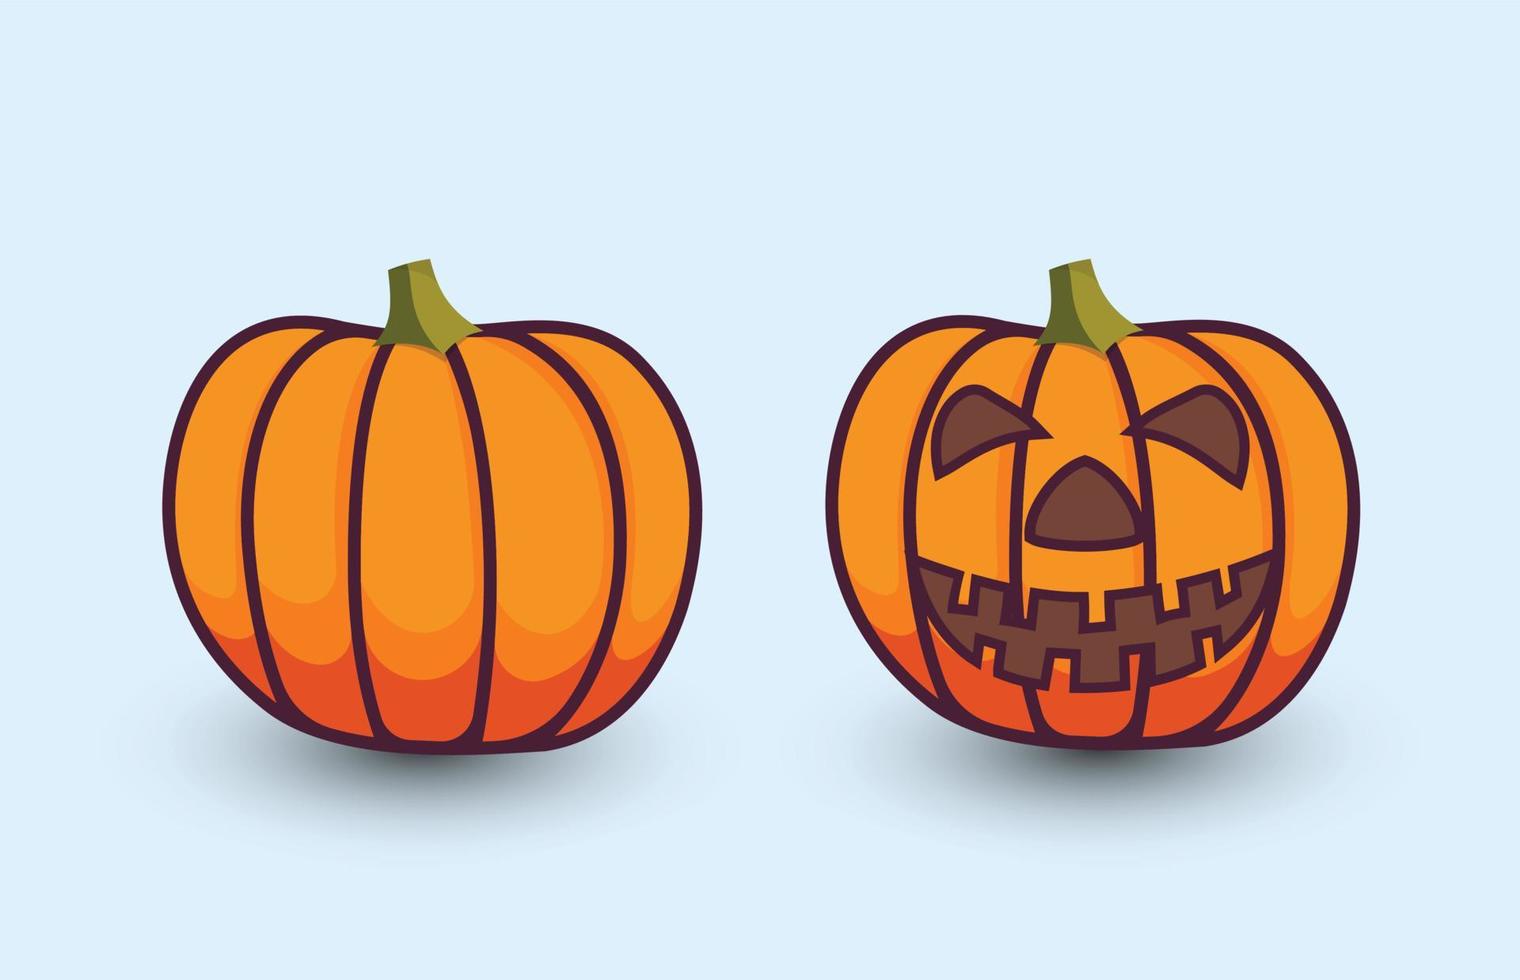 conception de vecteur d'illustration d'halloween avec clipart d'illustration de citrouille douce, concept unique minimal créatif.